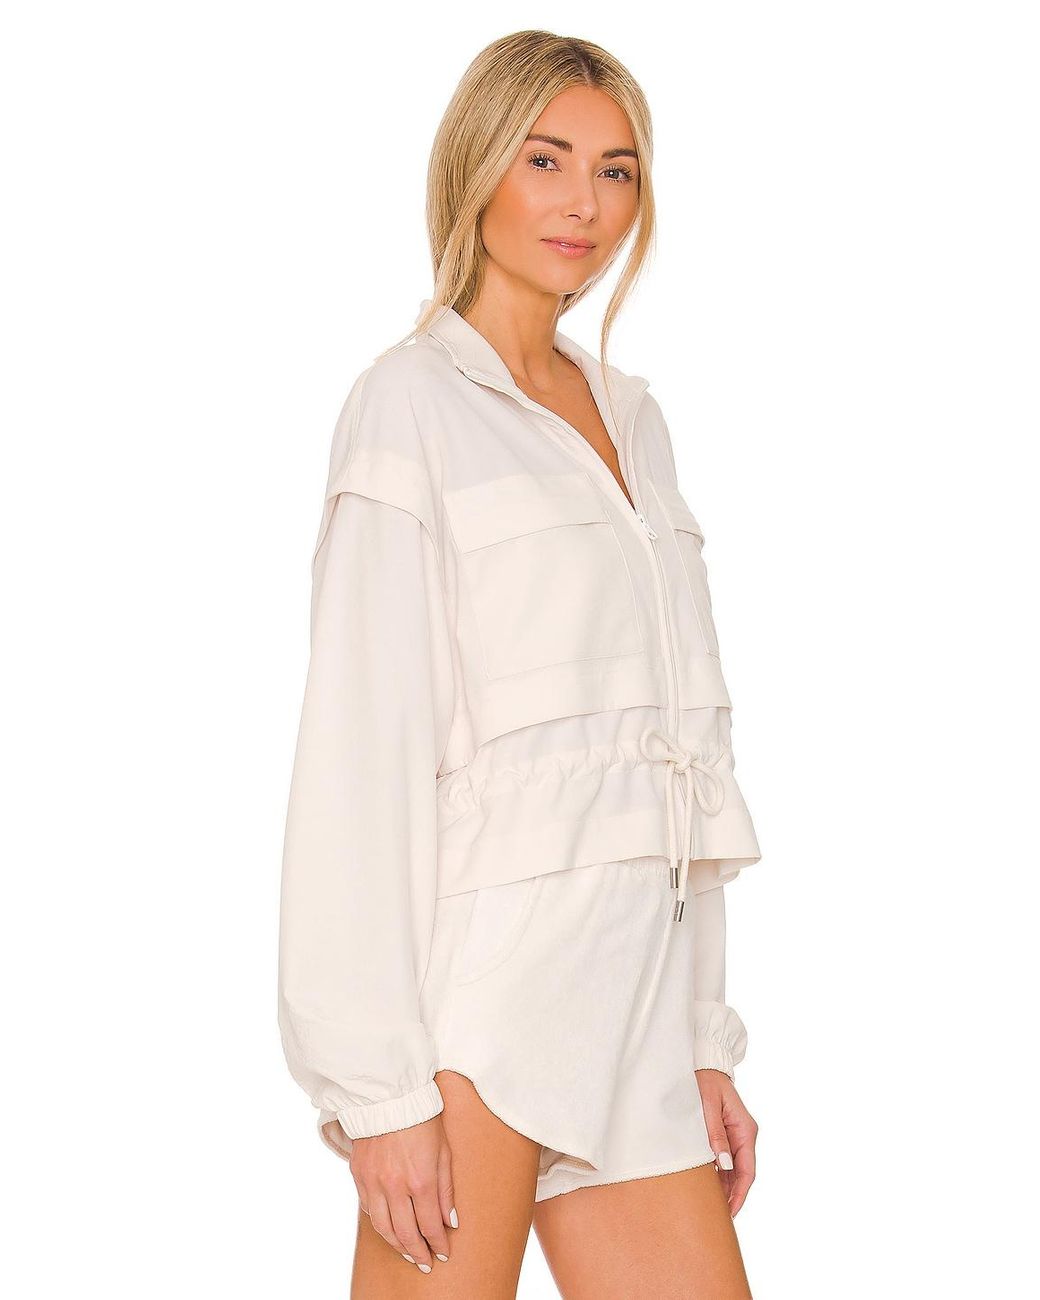 Alo Yoga  Ready Set Jacket in Ivory, Size: Large - ShopStyle